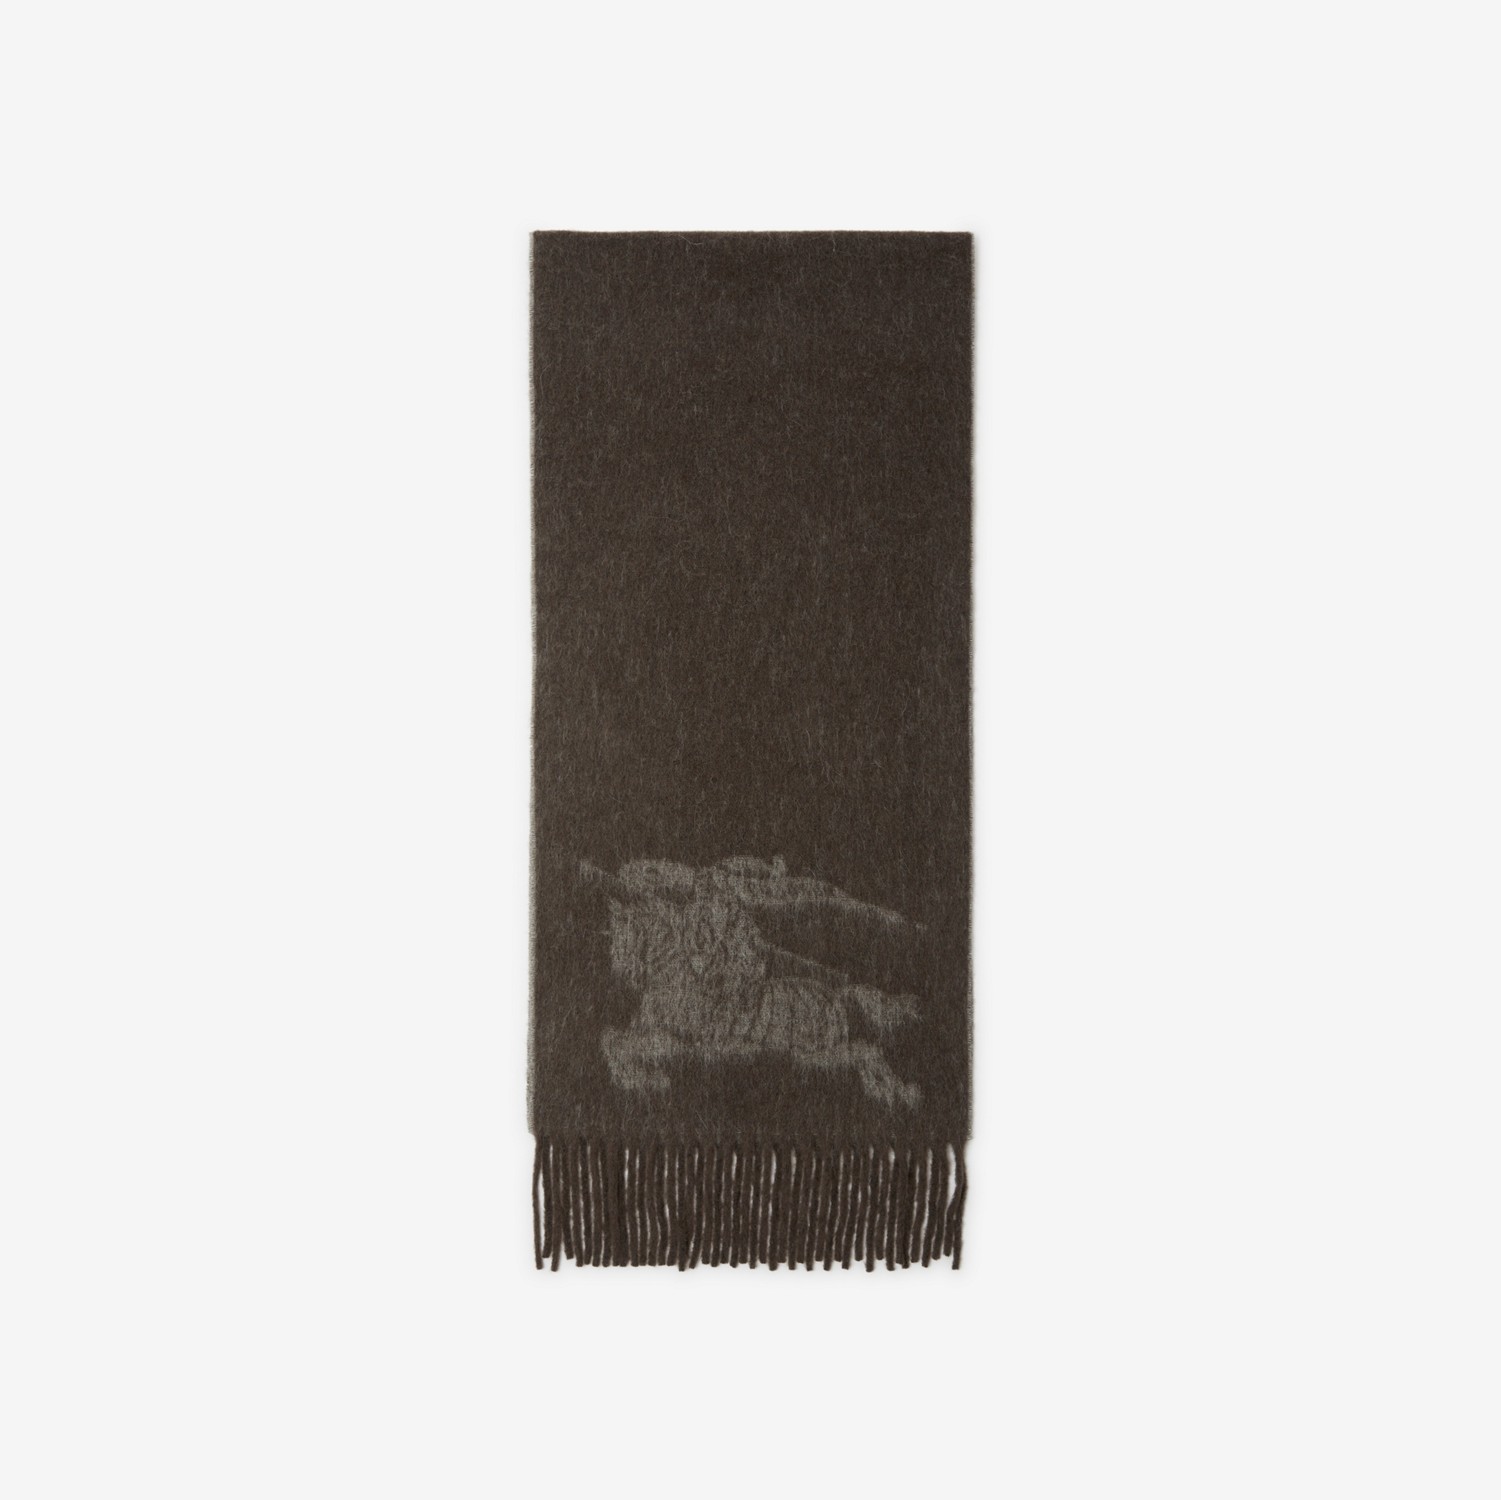 马术骑士徽标羊驼毛羊毛混纺围巾 (水獭棕) | Burberry® 博柏利官网